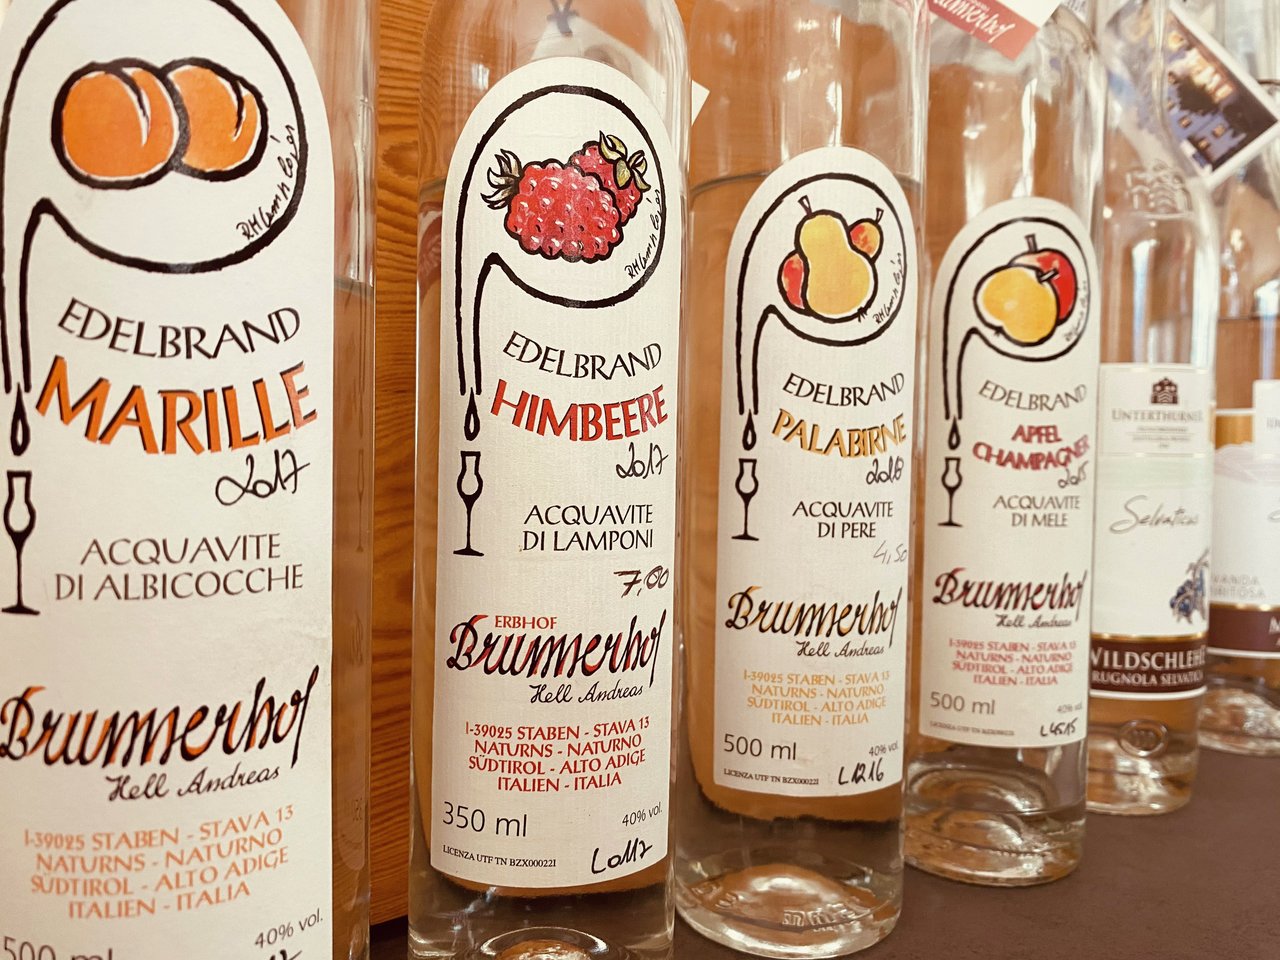 Brunnerhof Staben distilla molta frutta regionale, come albicocche della Val Venosta, prugne e palabirne, ma anche un'ottima grappa di Zweigelt.